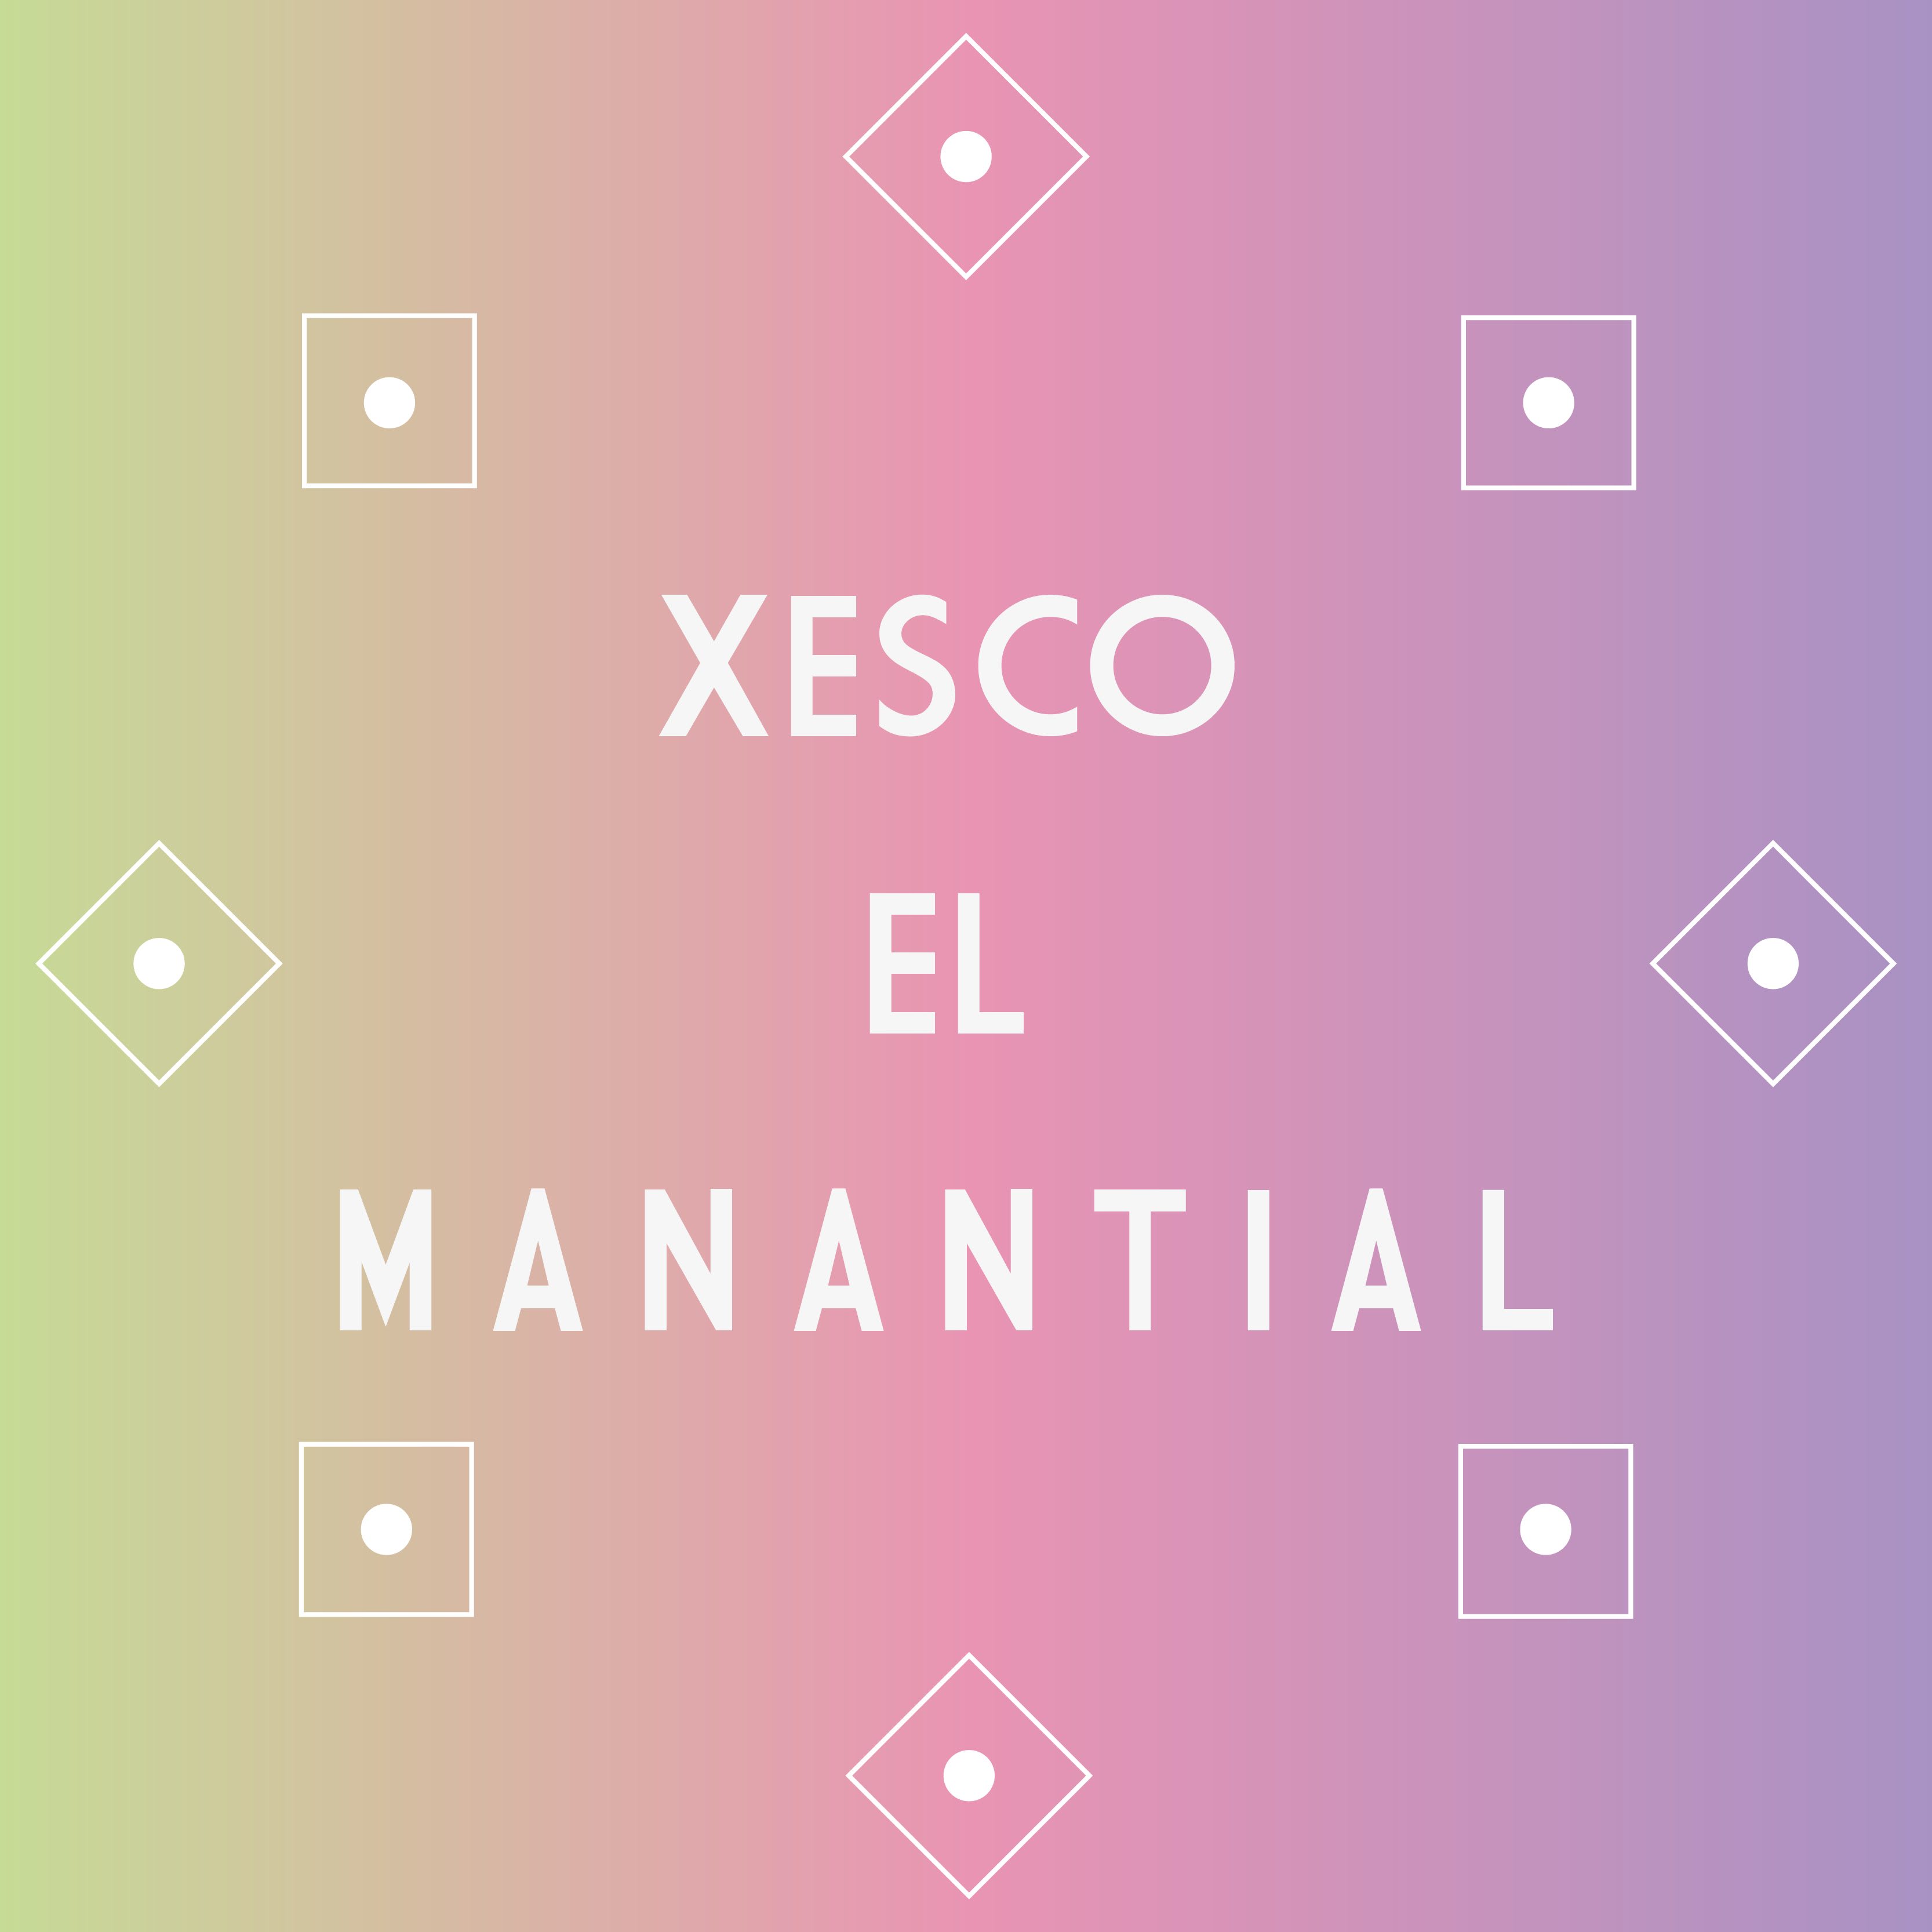 Xesco El Manantial